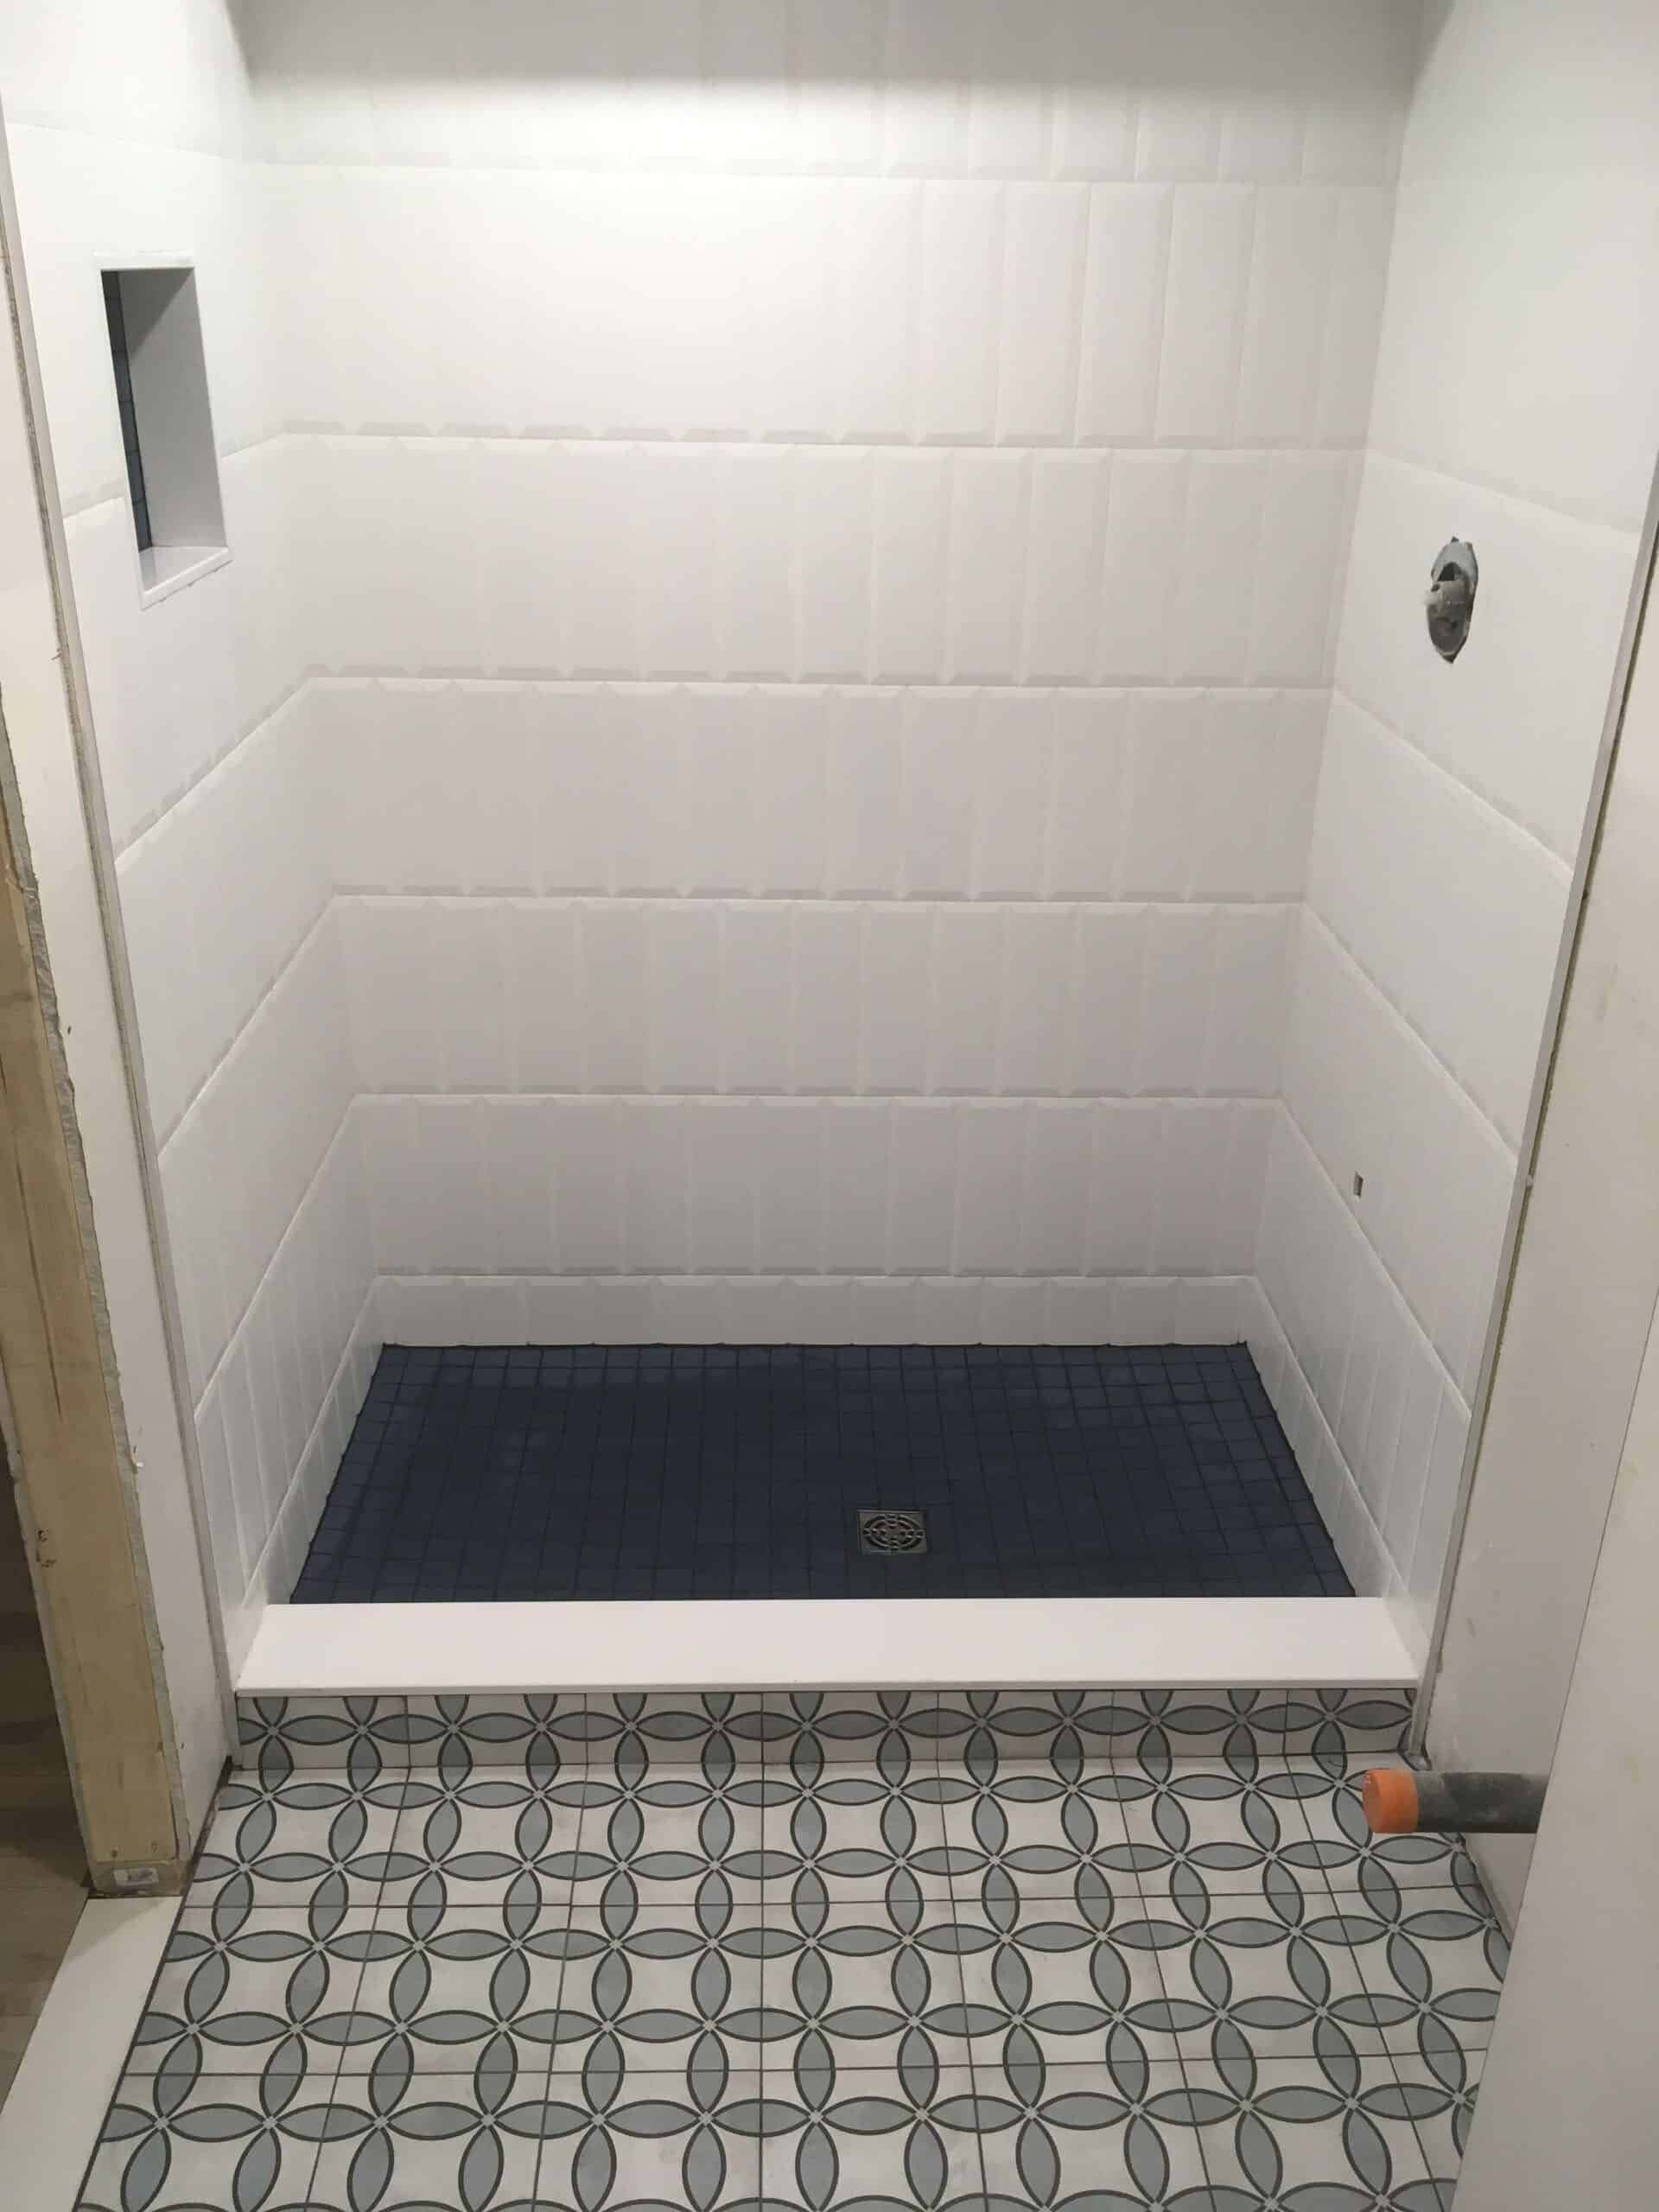 Shower Floor Tile, How To Tile Floor Of Shower